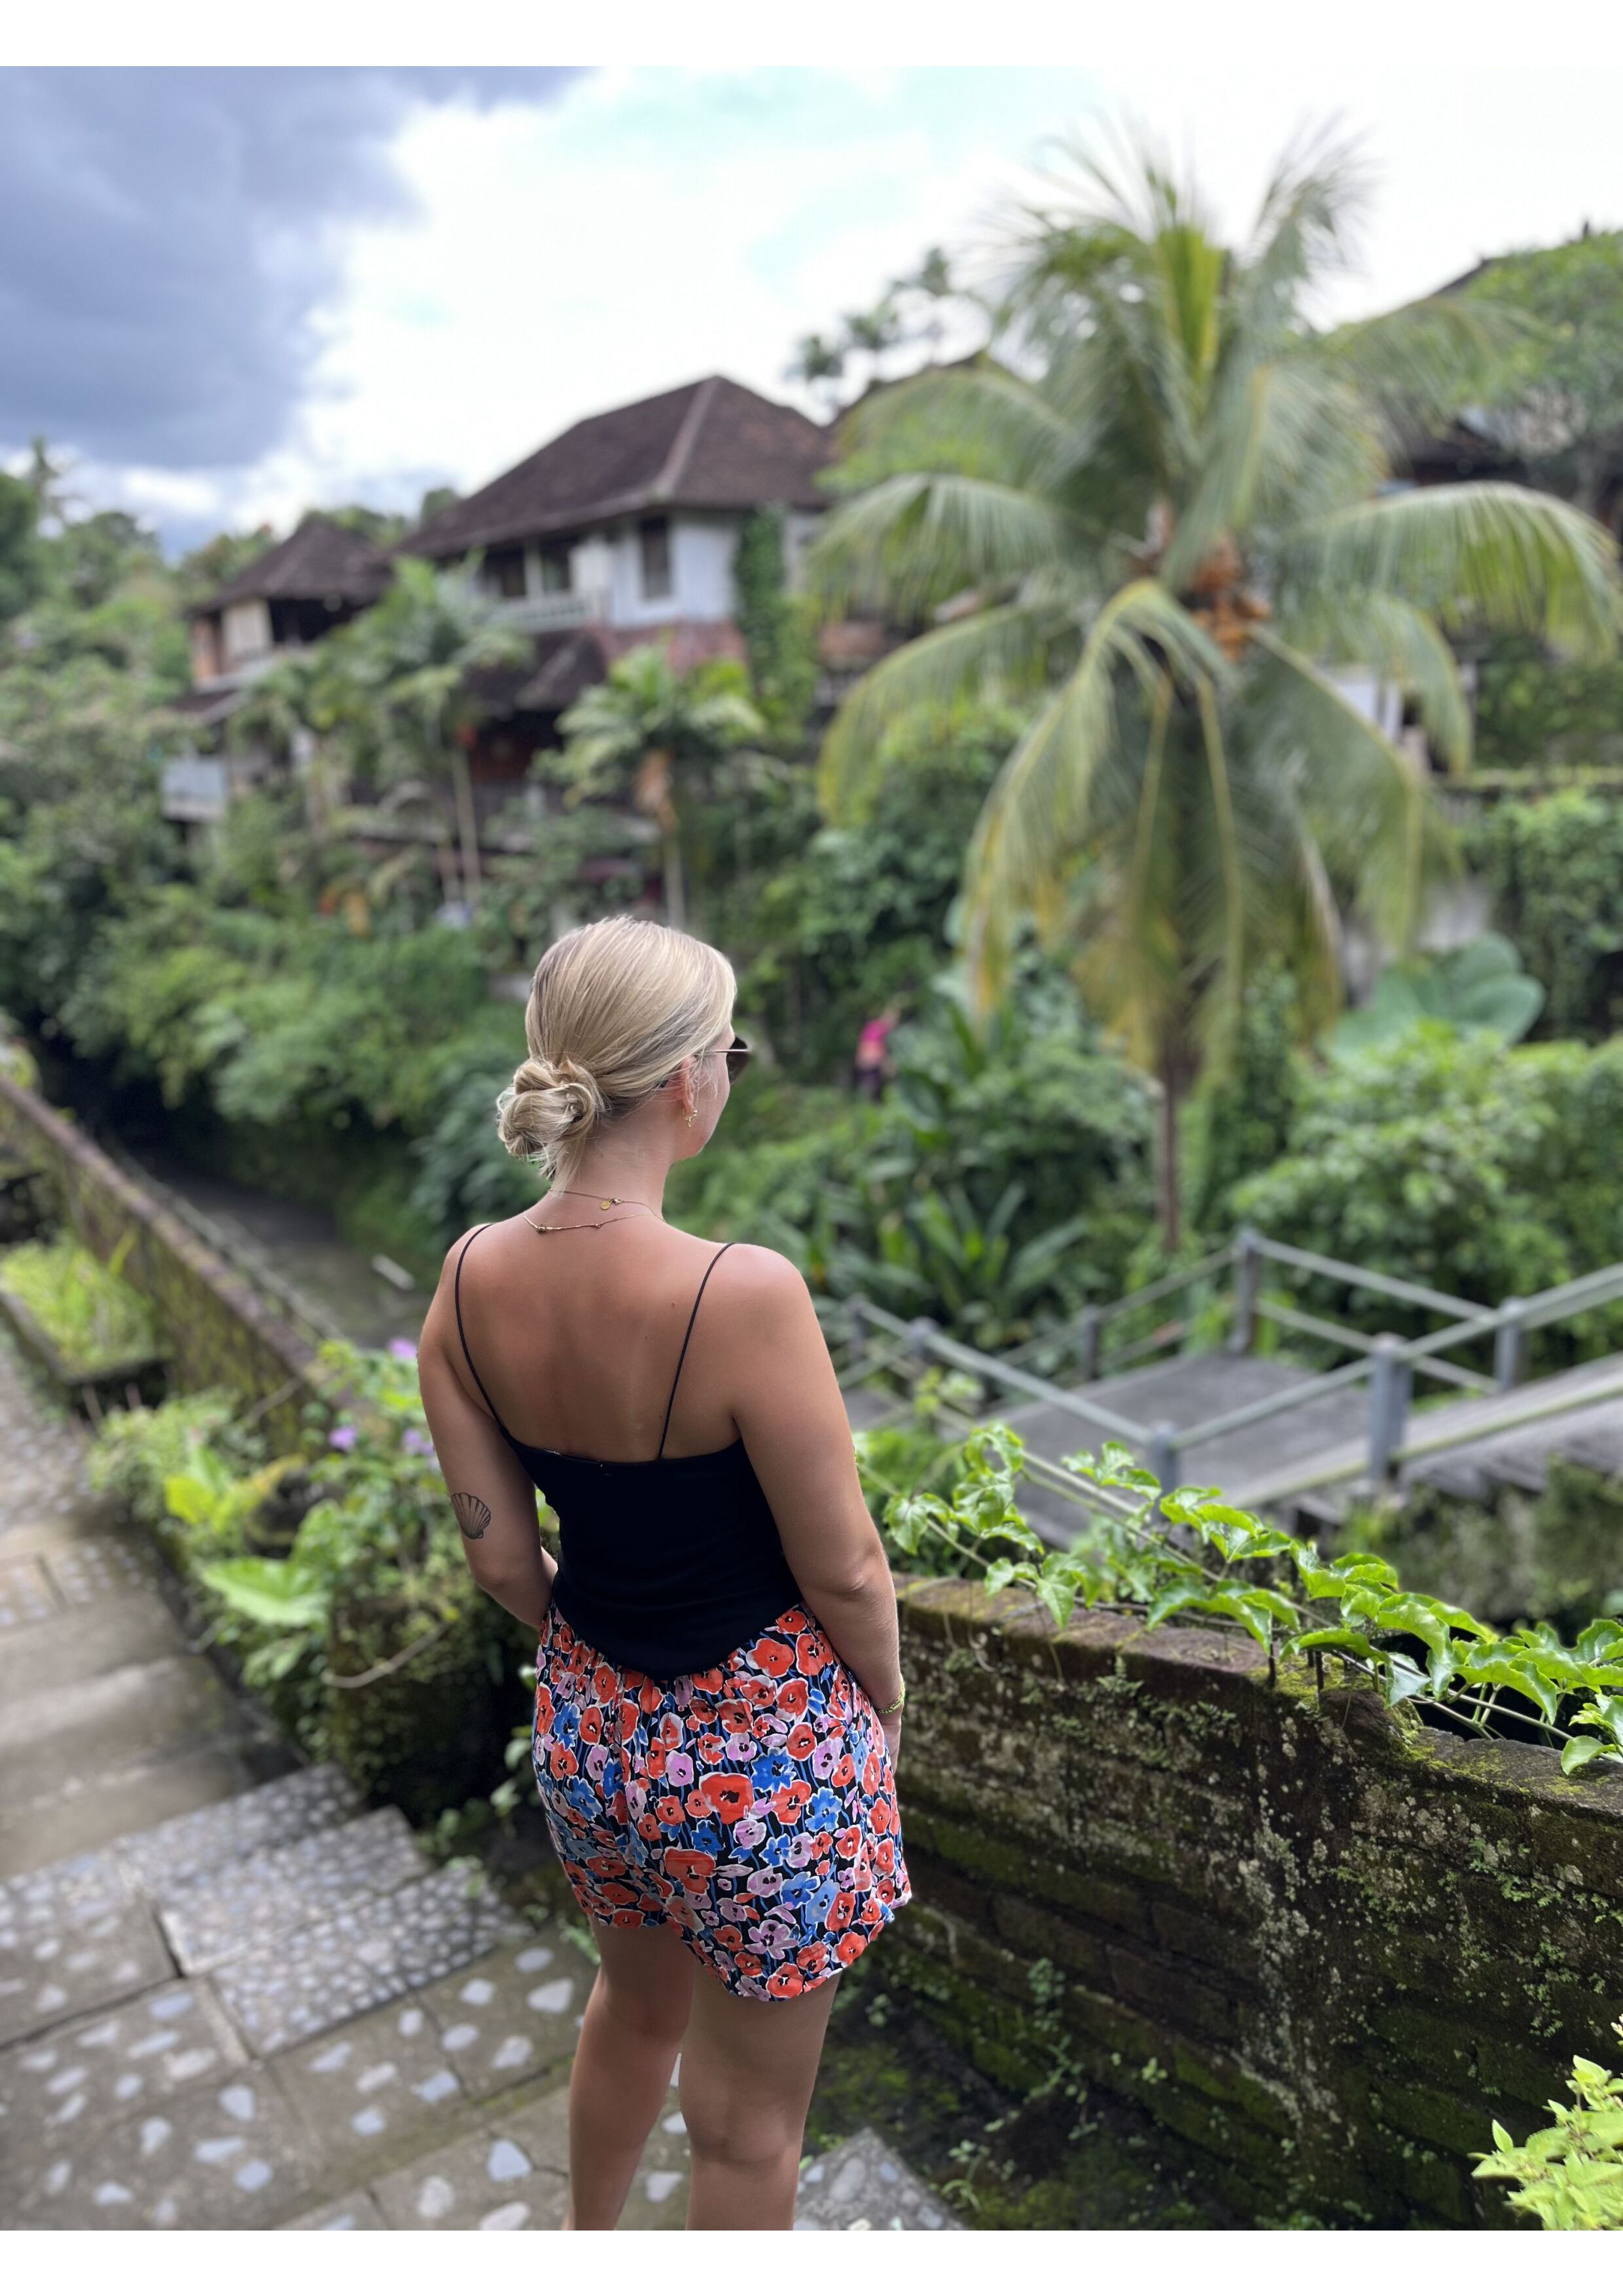 Ubud, Bali, Indonesien, Reisebereicht, Reisevlog, Reiseblog, Dschungel